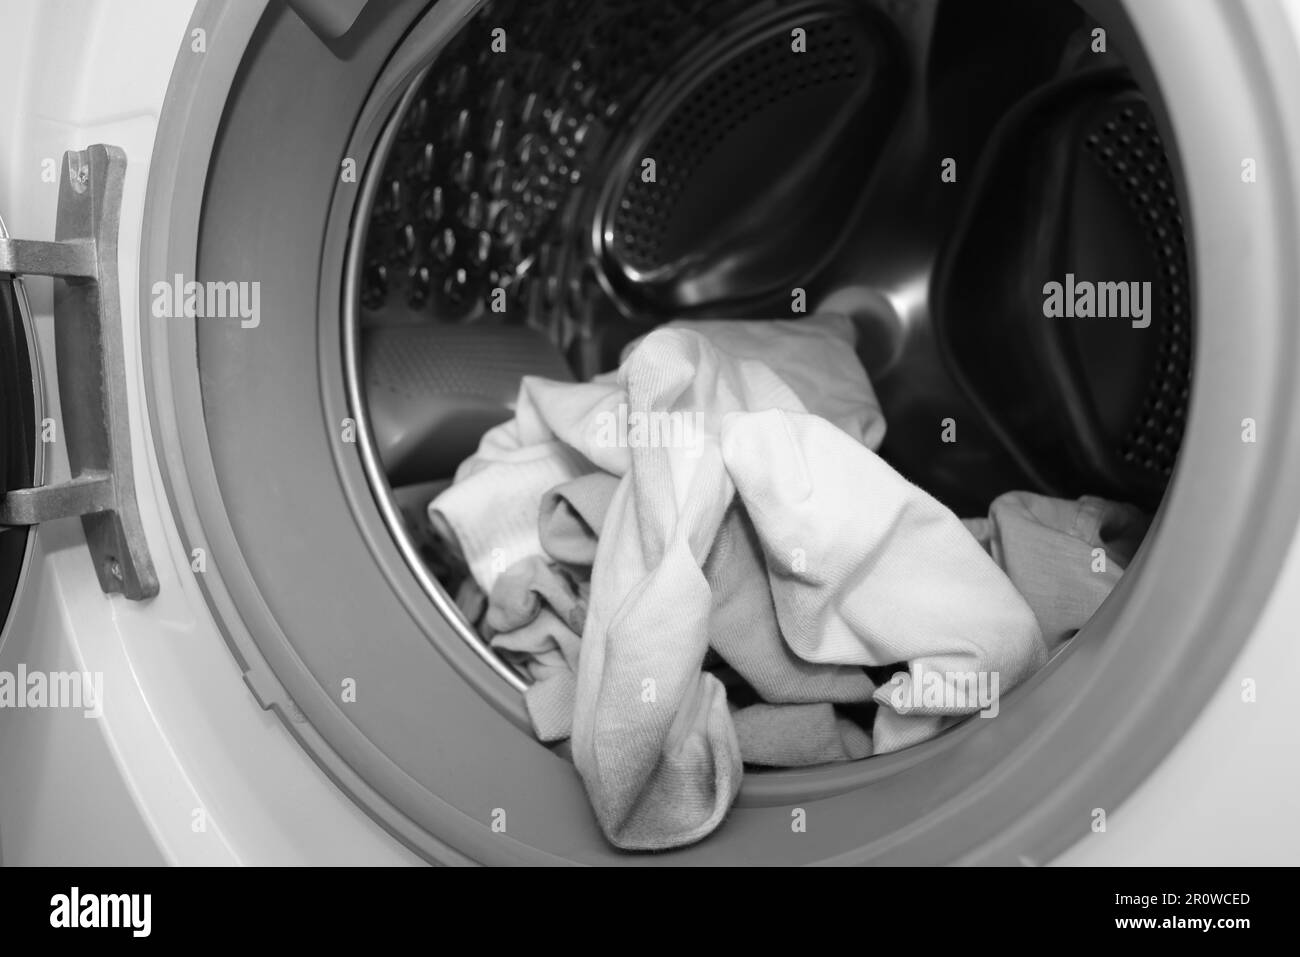 Viele schmutzige Socken in der Waschmaschine, Schließung Stockfotografie -  Alamy